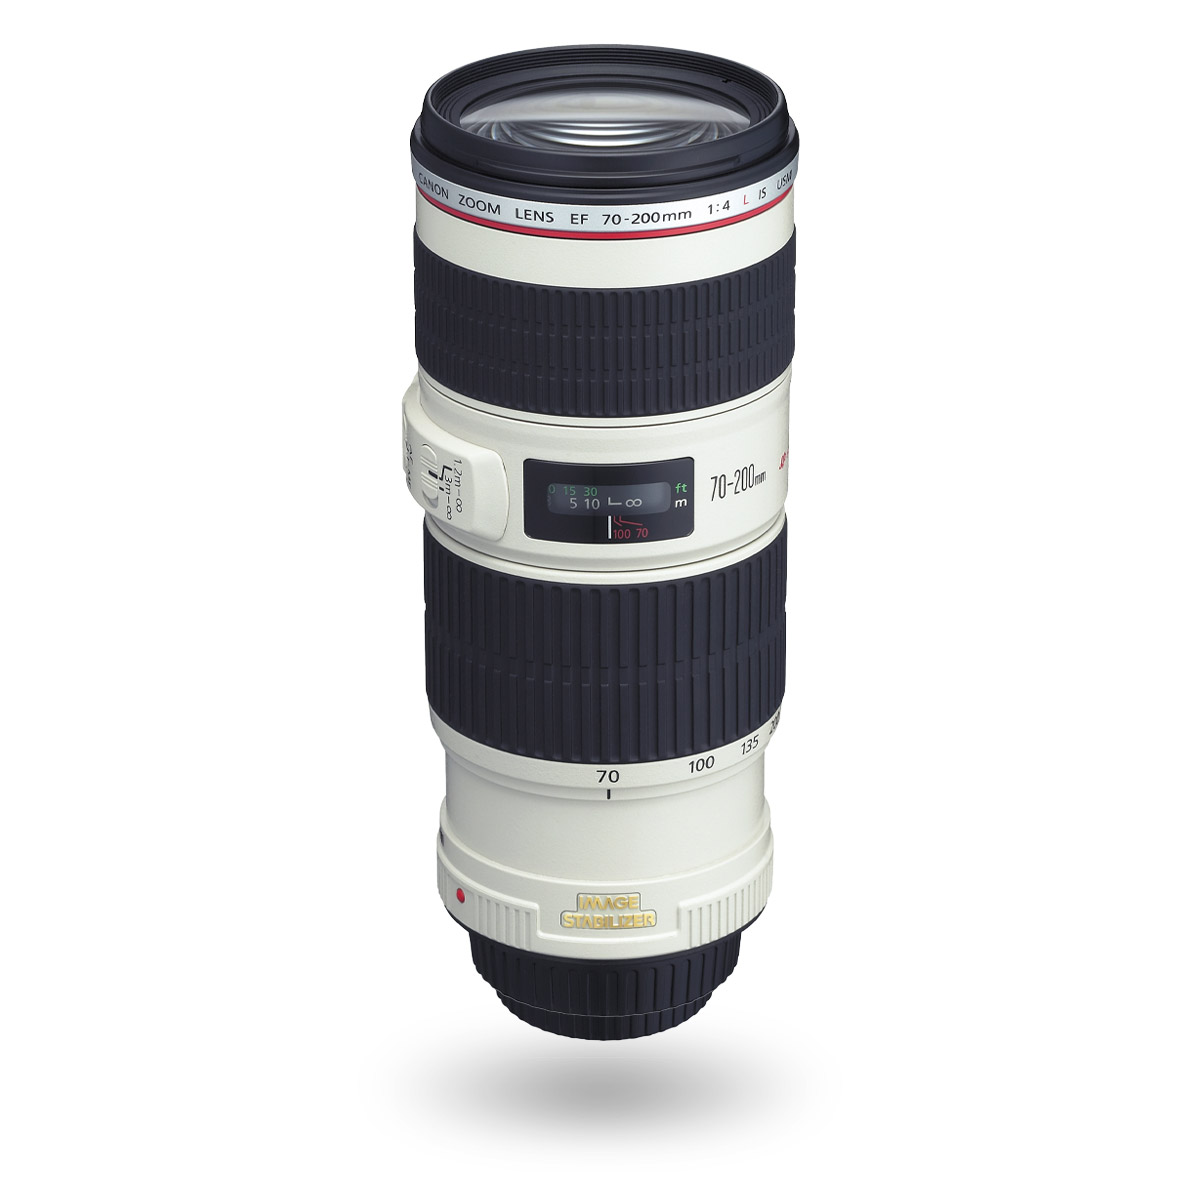 EF 70-200mm f/4L IS USM lens